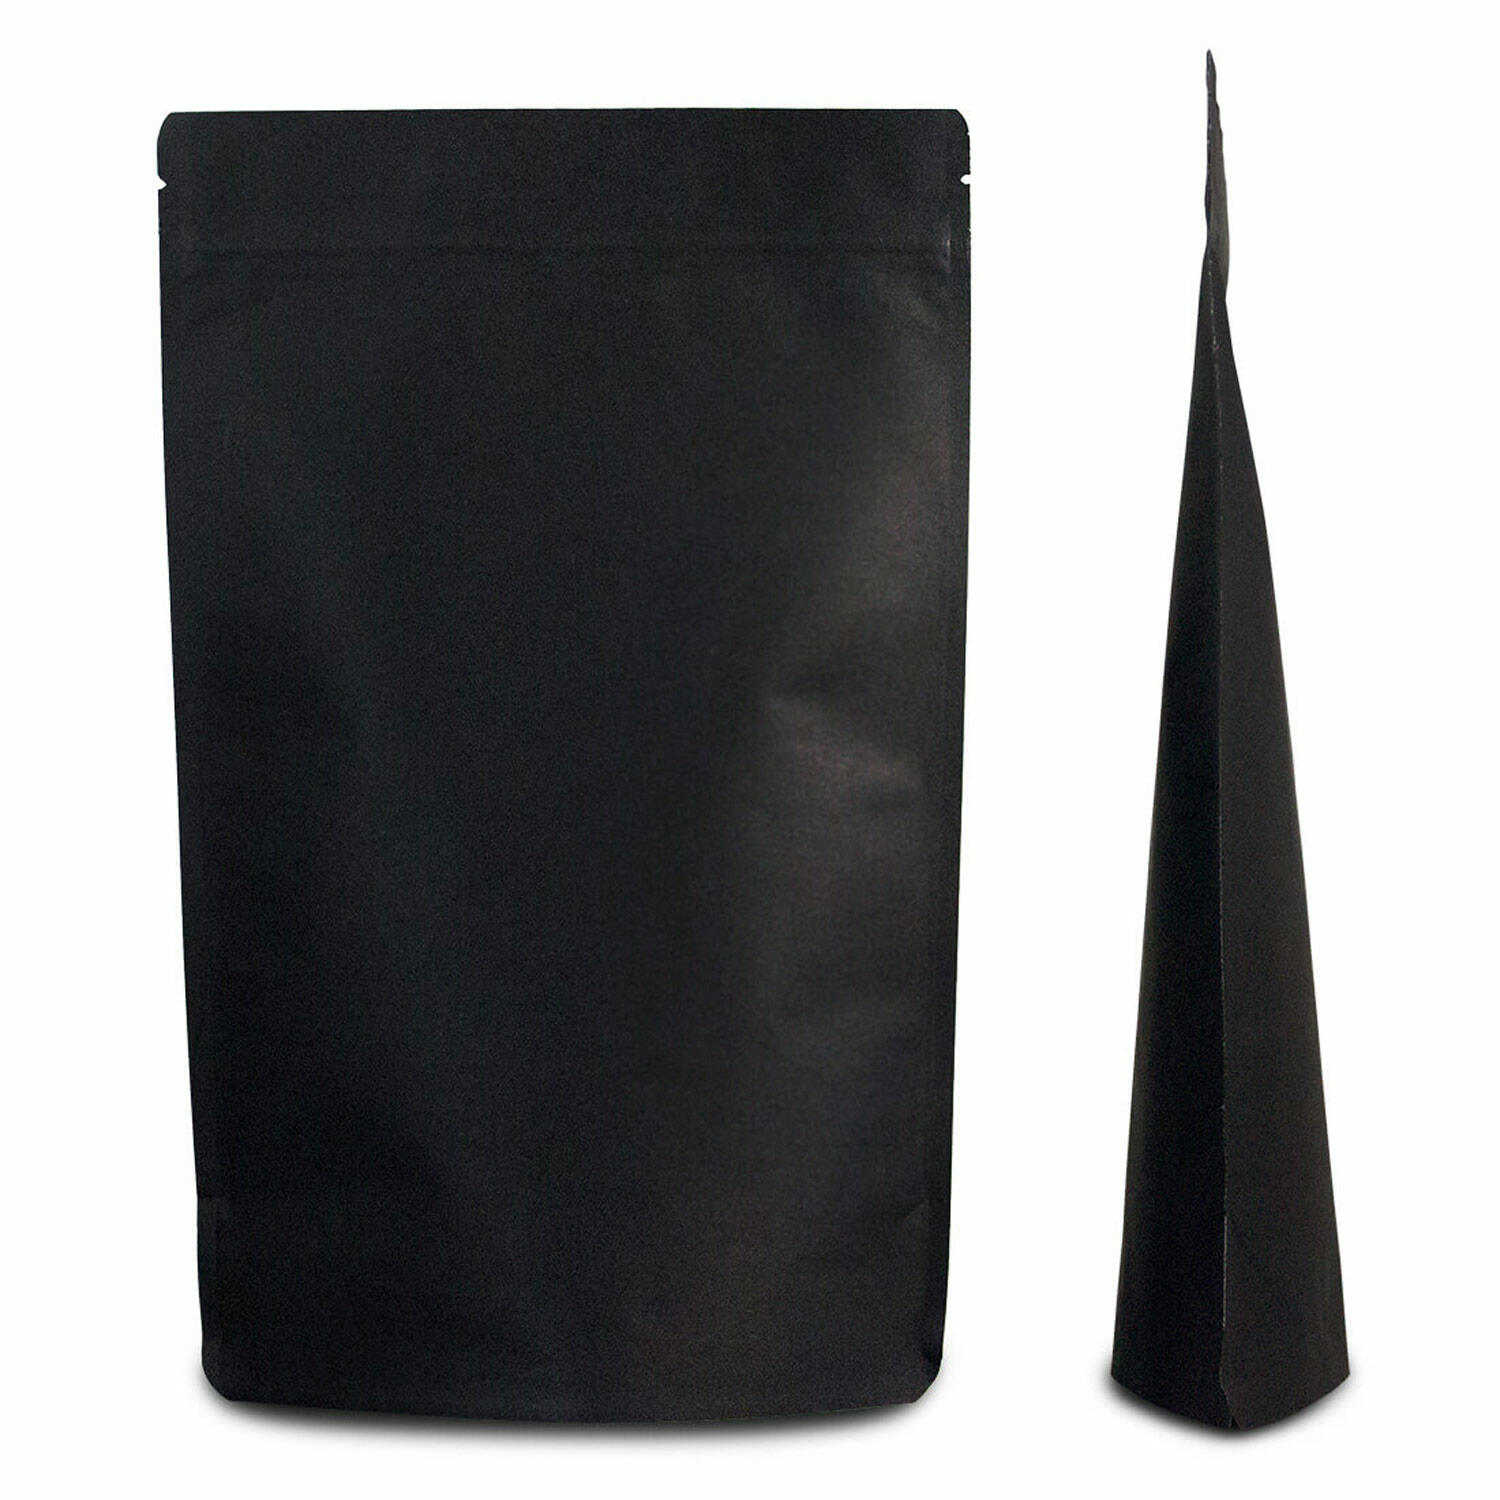 Standbodenbeutel Kraftpapier schwarz, 110x185x65mm,  250ml, 1000 Stk.